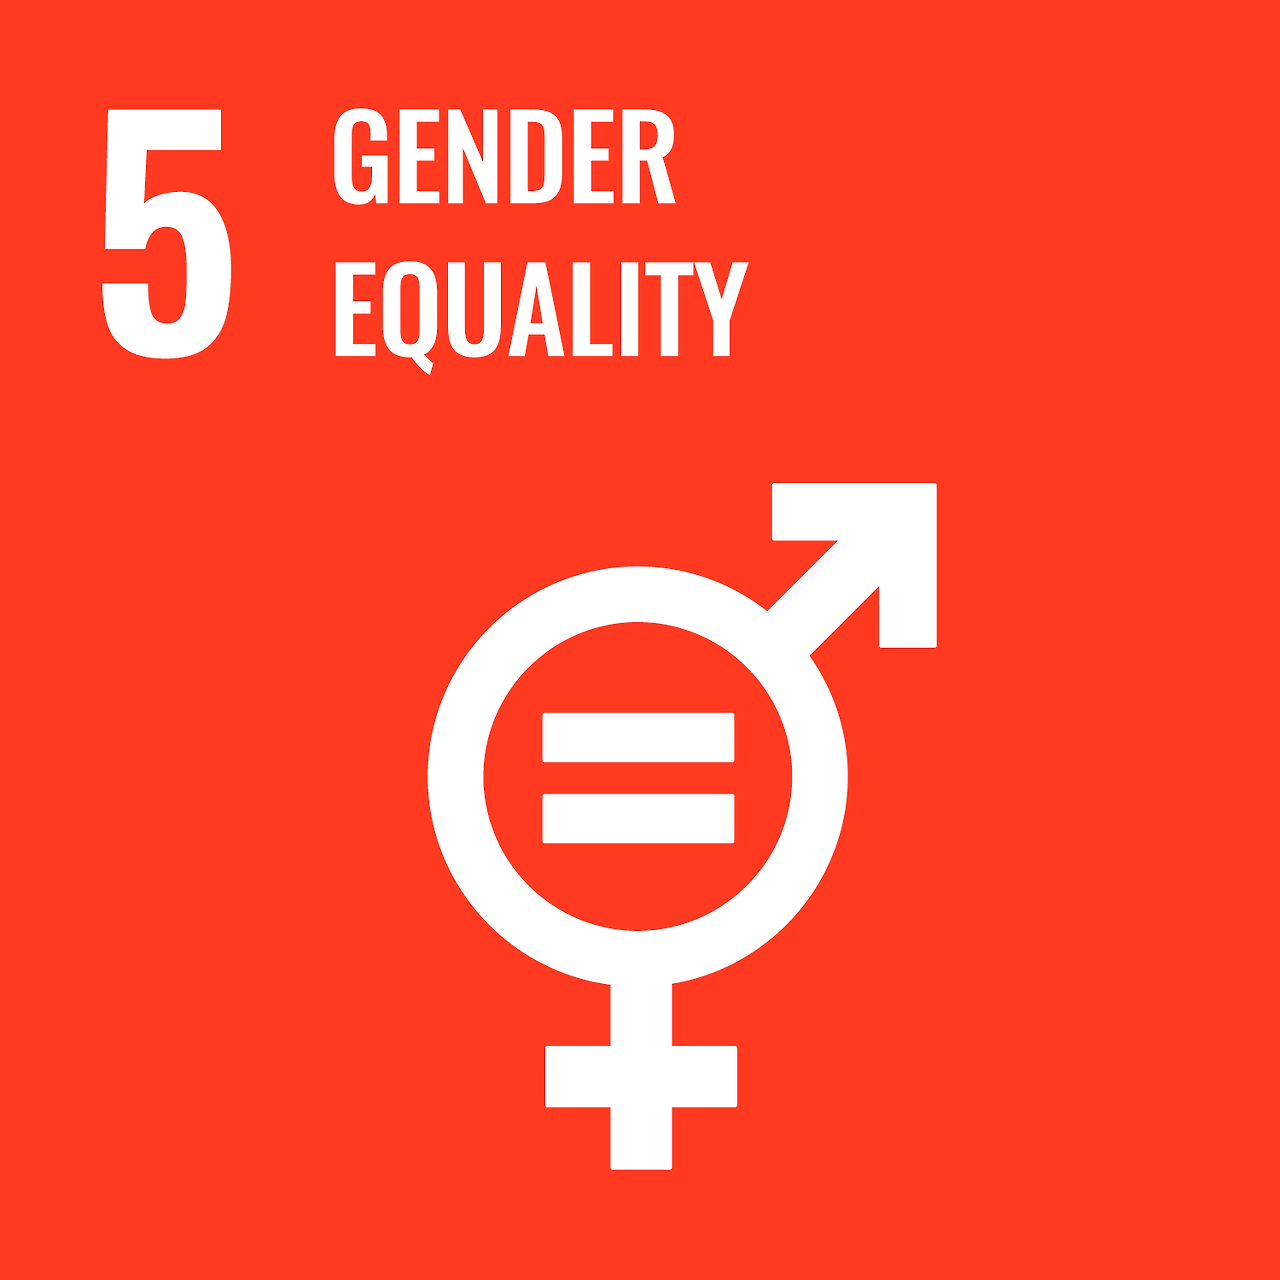 성평등 - 성평등 달성과 모든 여성 및 여아의 권익신장